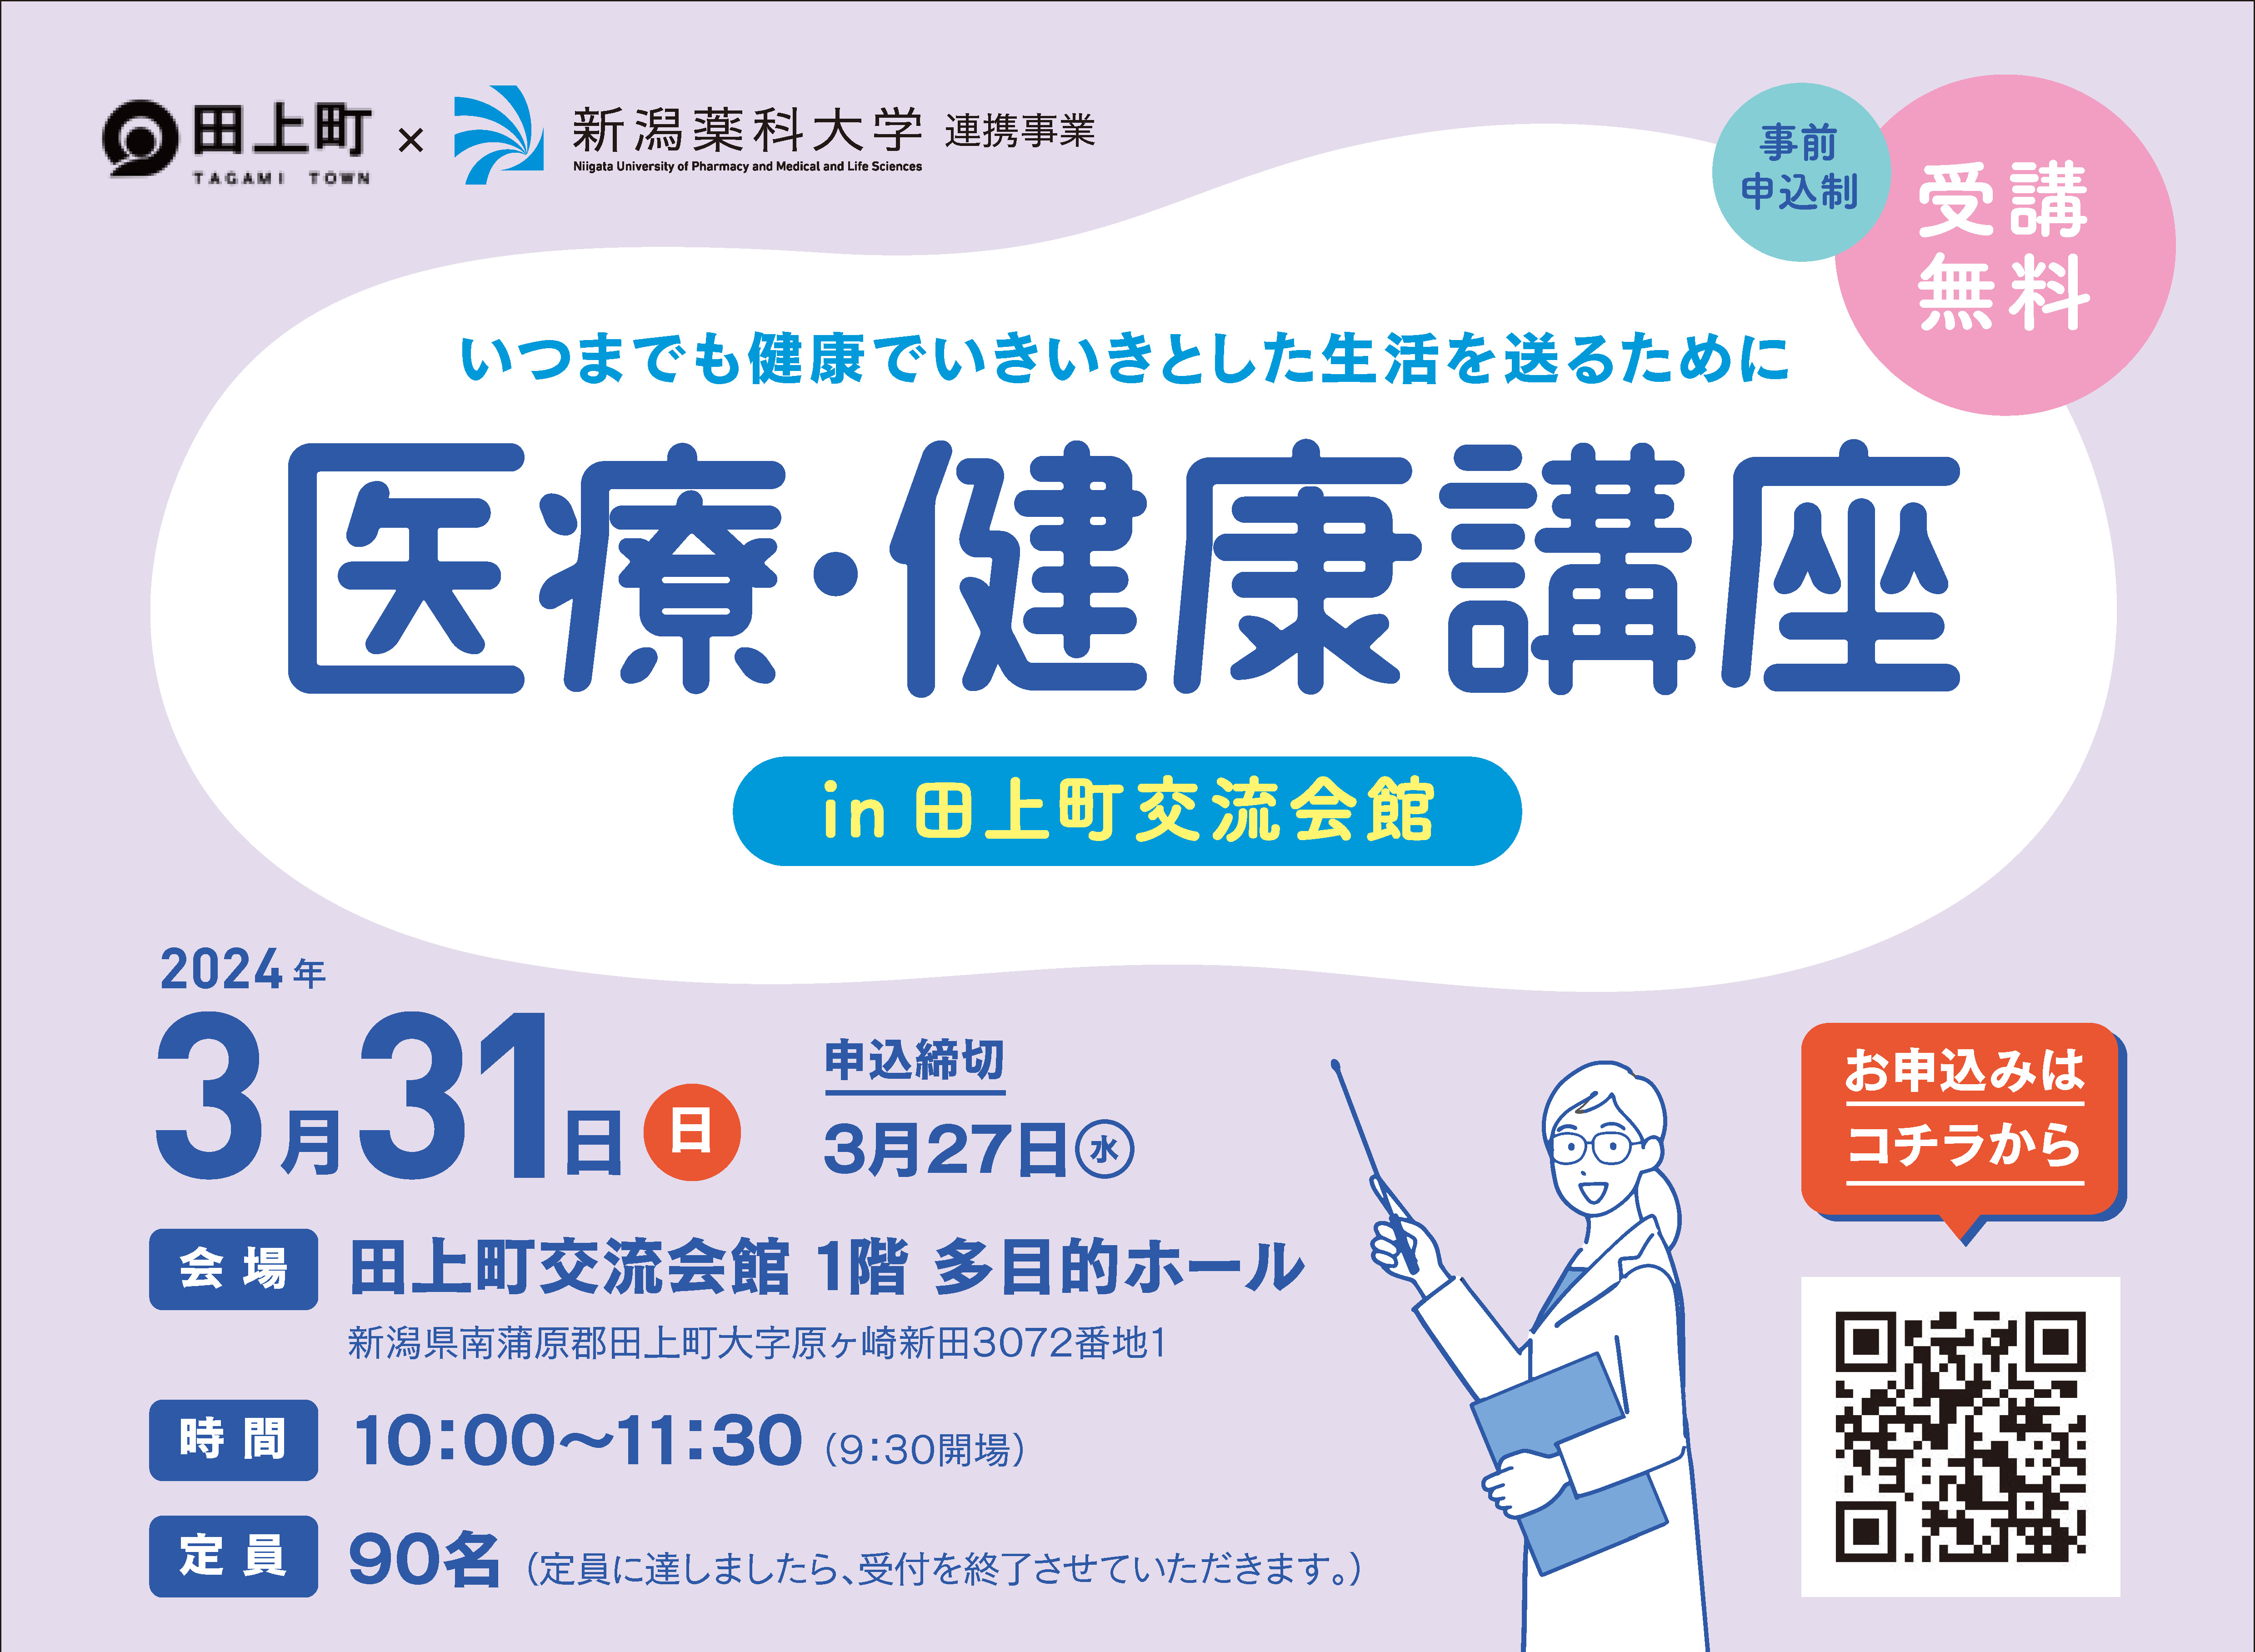 公開講座「医療・健康講座 in 田上町交流会館」を開催します